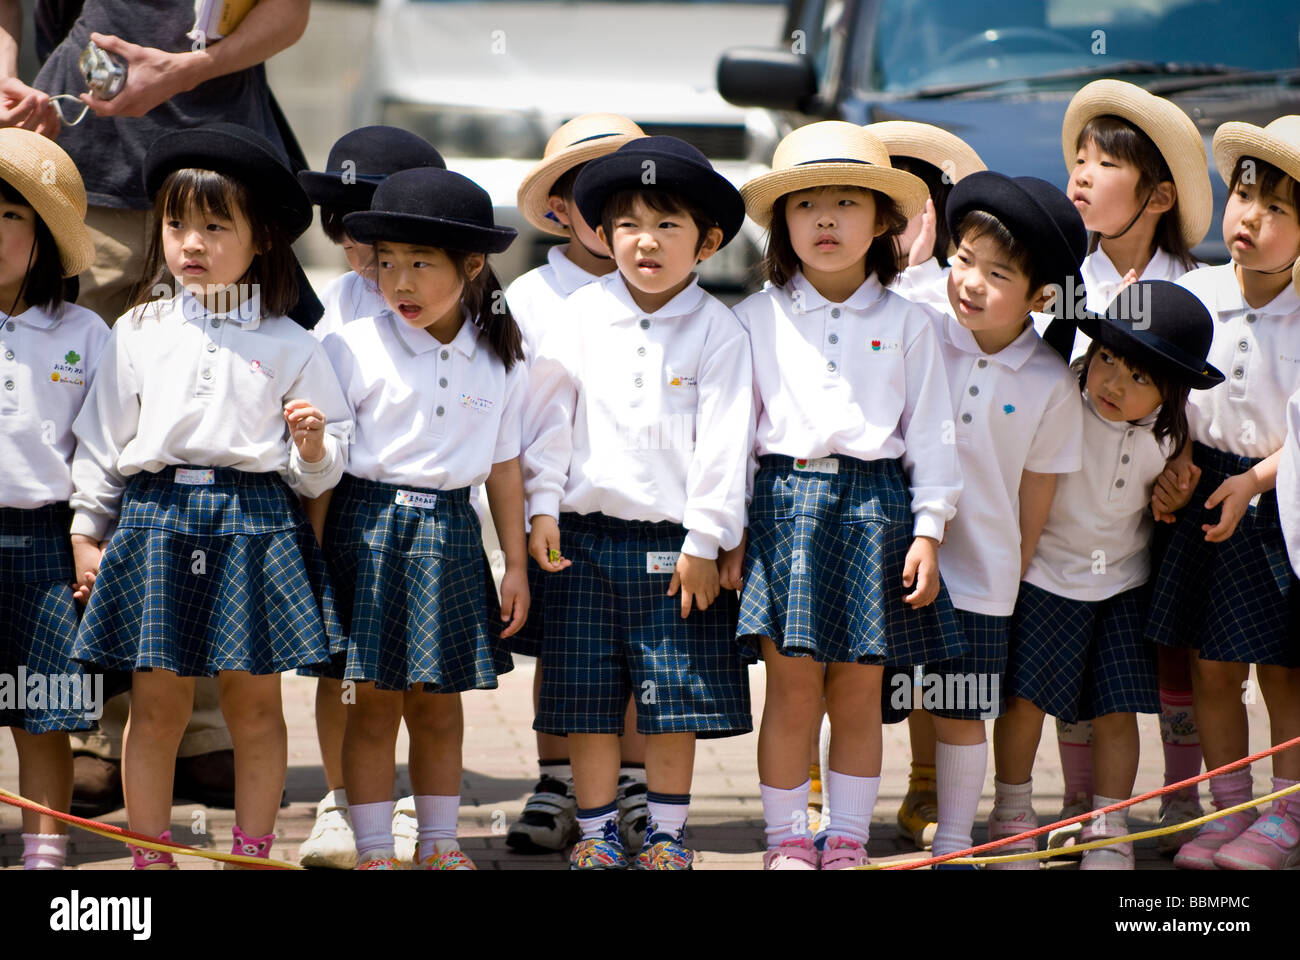 Japanese School Children Uniforms